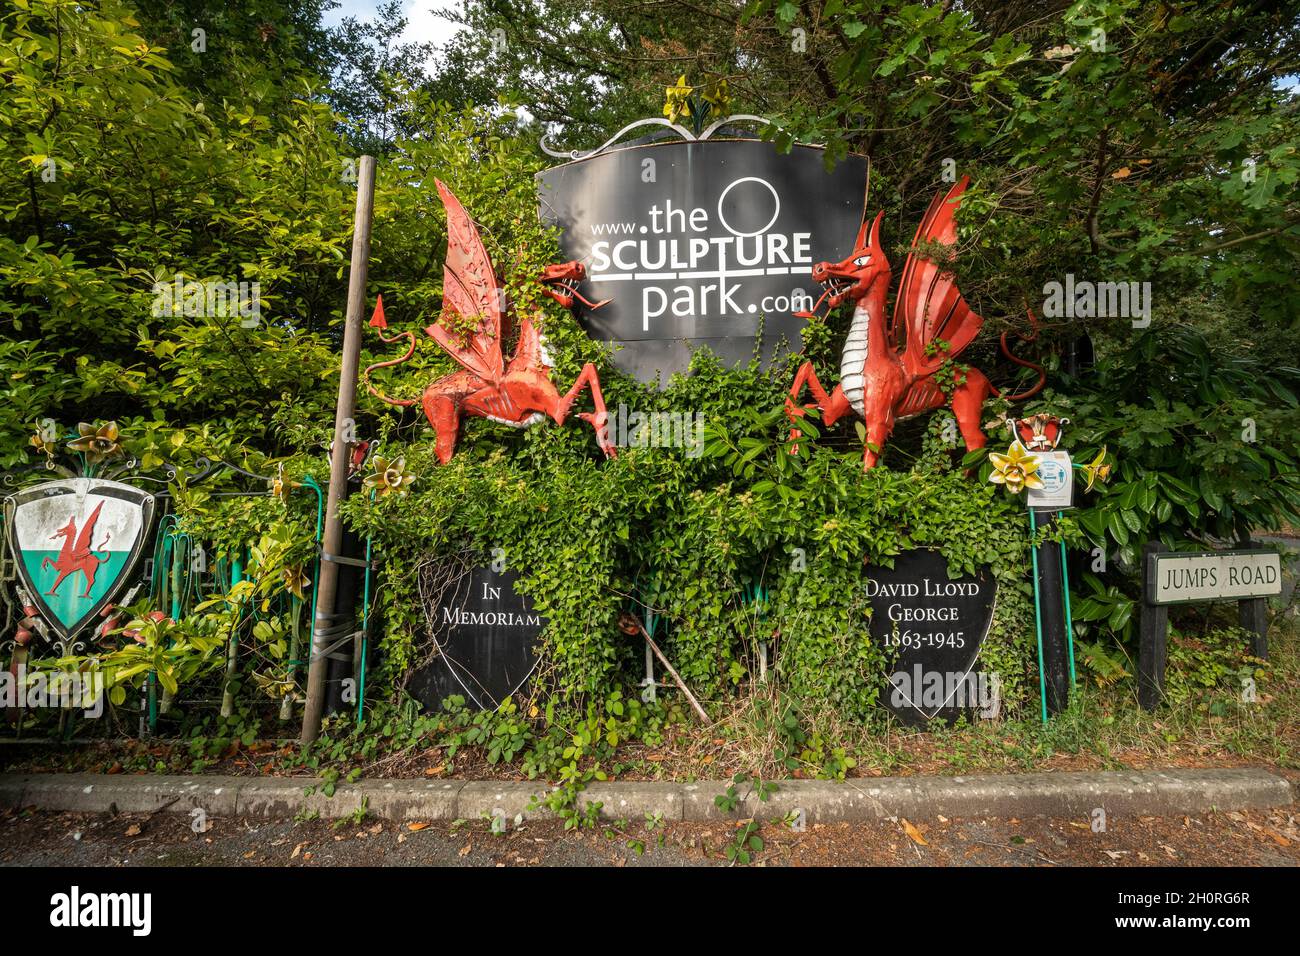 El cartel Sculpture Park en la entrada, atracción turística en Surrey, Inglaterra, Reino Unido Foto de stock